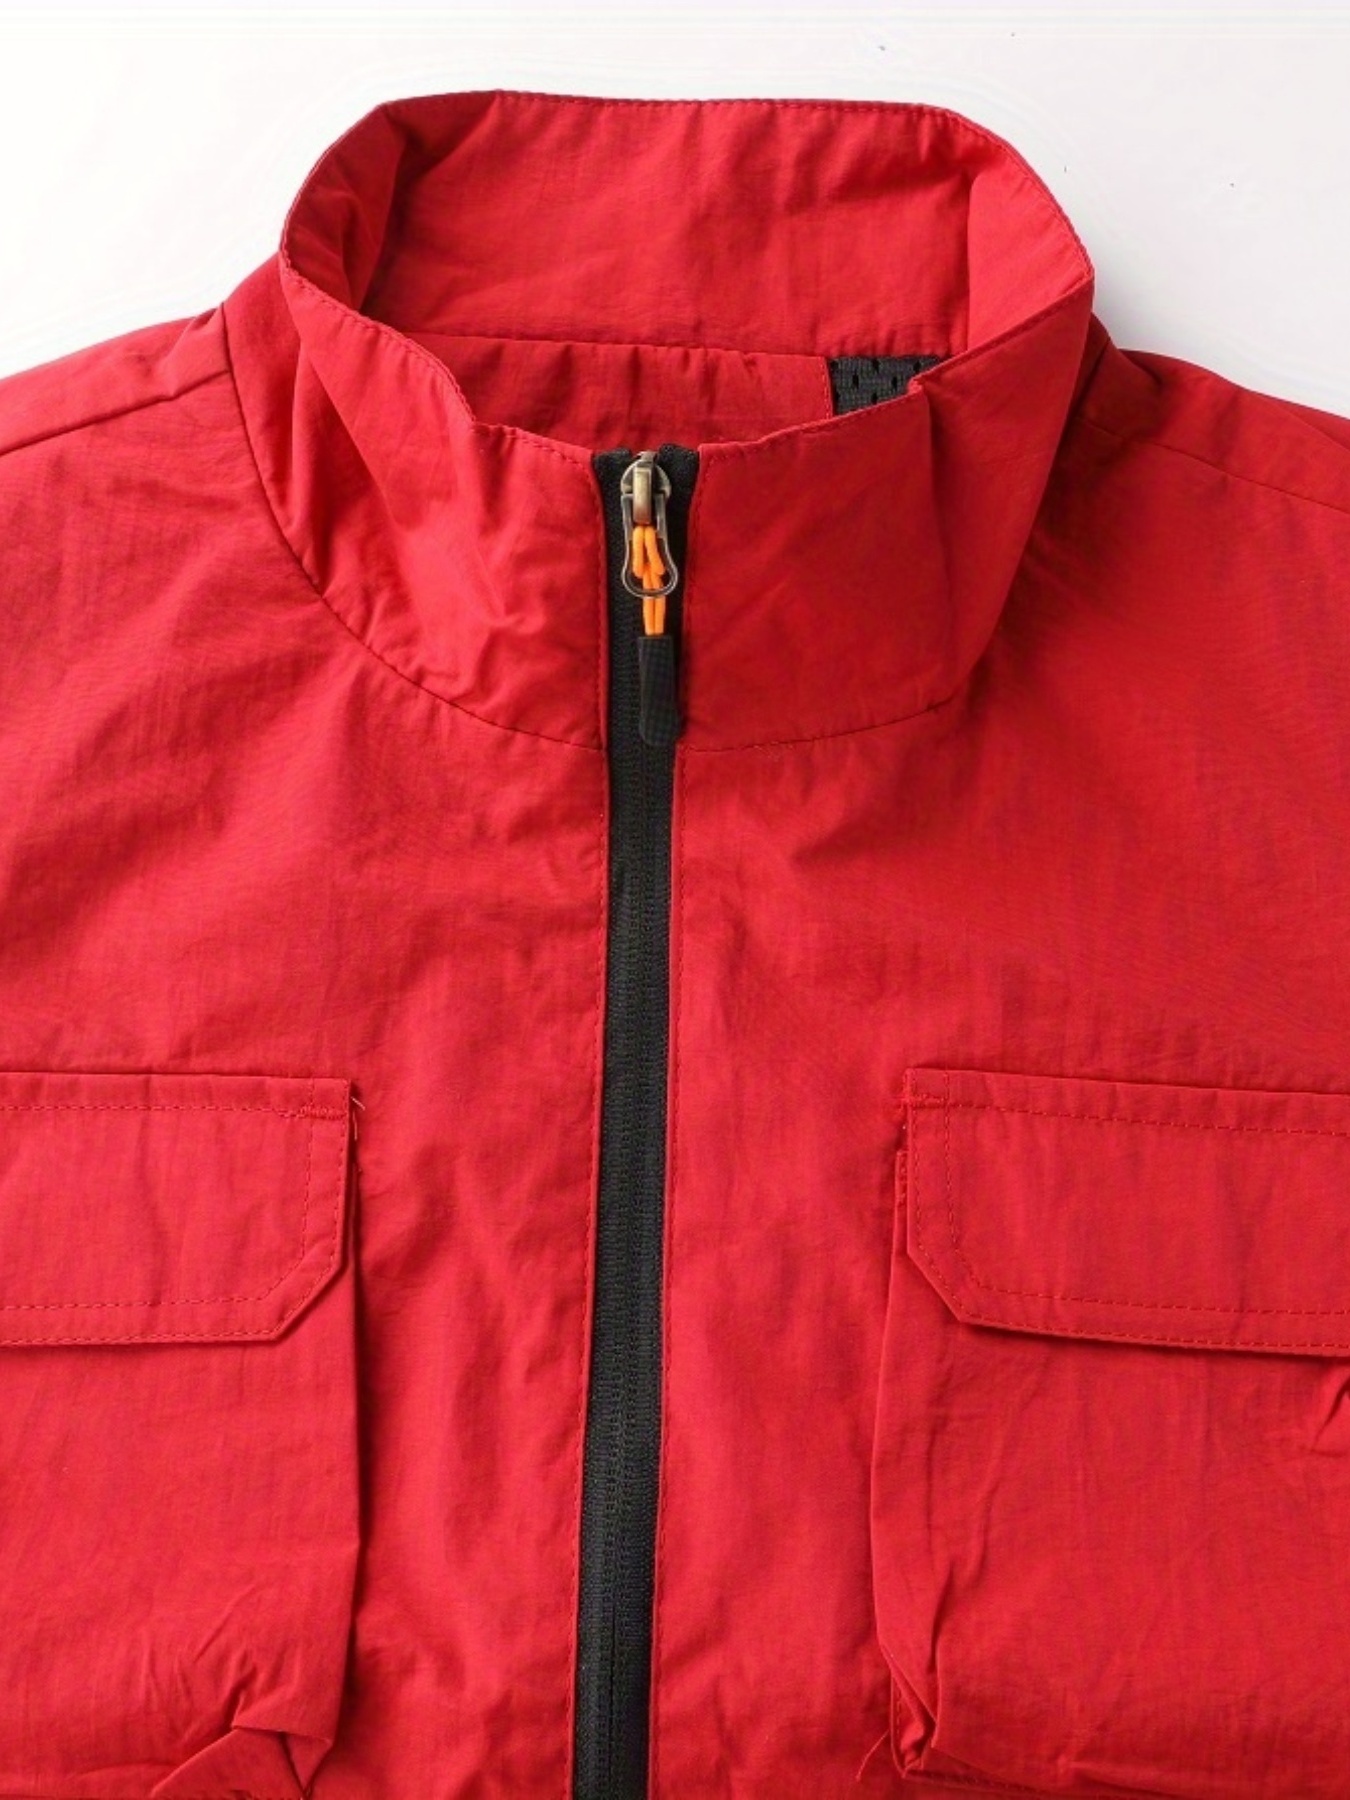 Men's Zipper Front Stand Collar Multi-Pocket Outdoor Vest Jacket